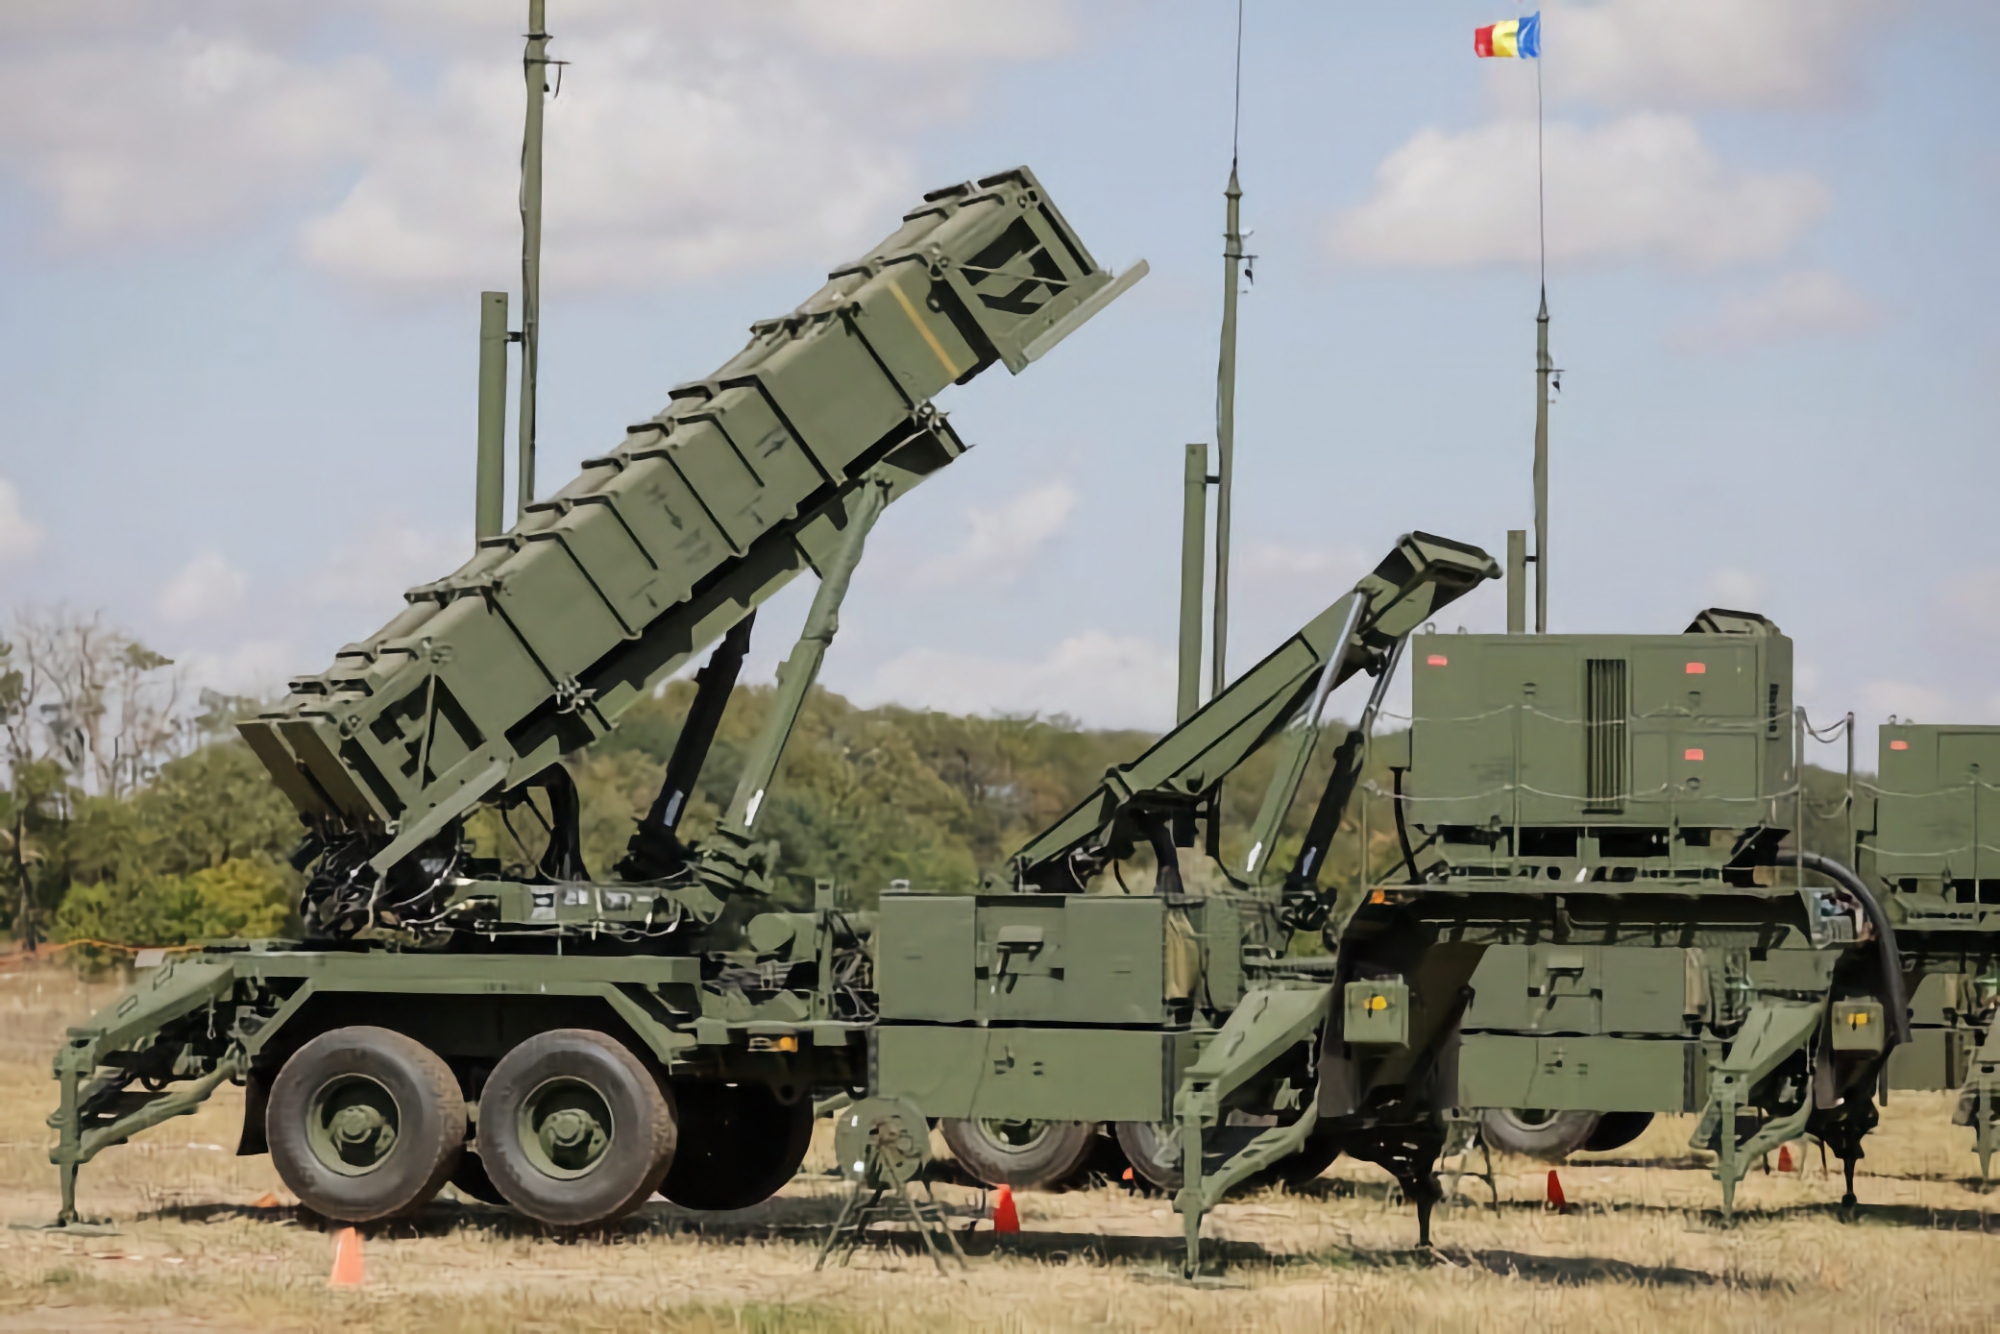 La Romania prenderà in considerazione il trasferimento del sistema missilistico terra-aria Patriot all'Ucraina